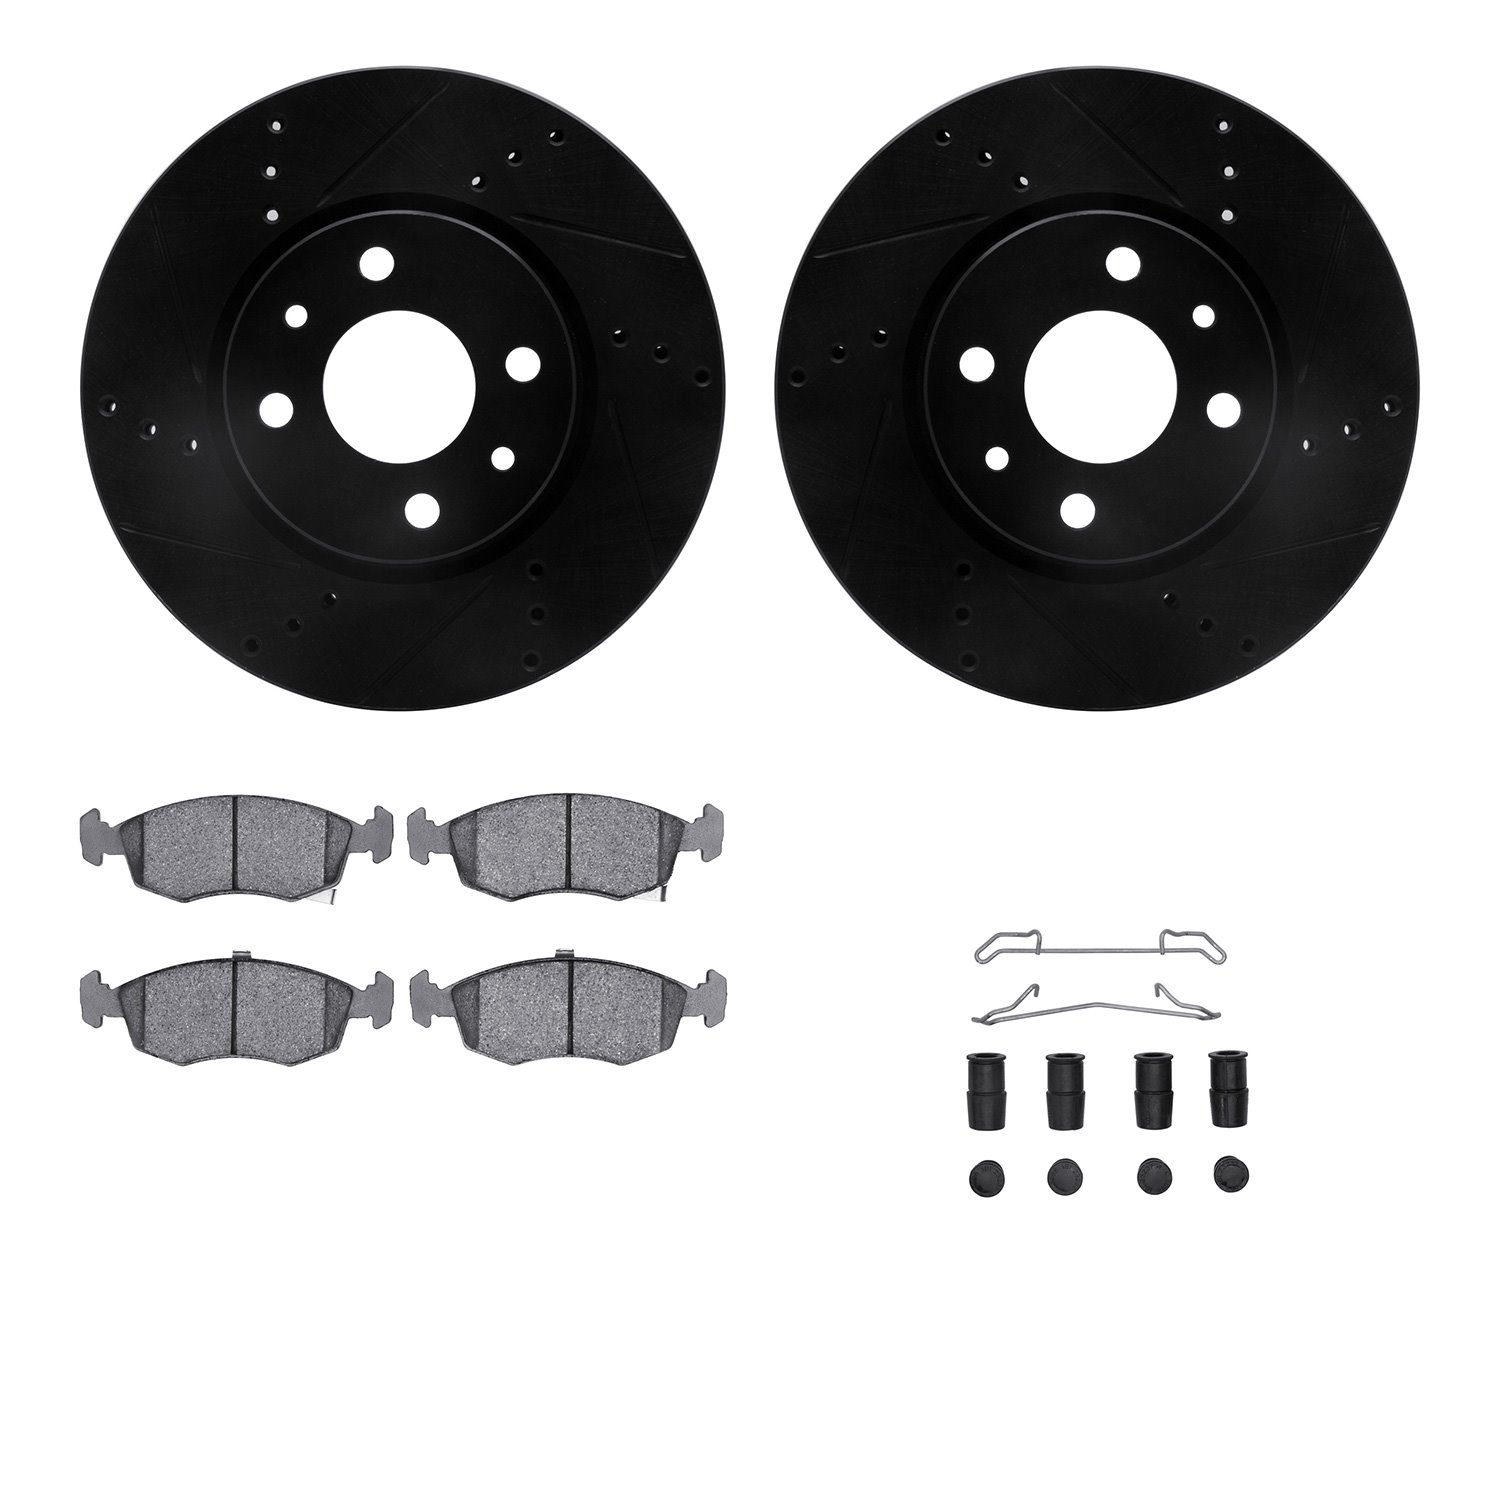 8512-07001 Drilled/Slotted Brake Rotors w/5000 Advanced Brake Pads Kit & Hardware [Black], 2012-2019 Mopar, Position: Front